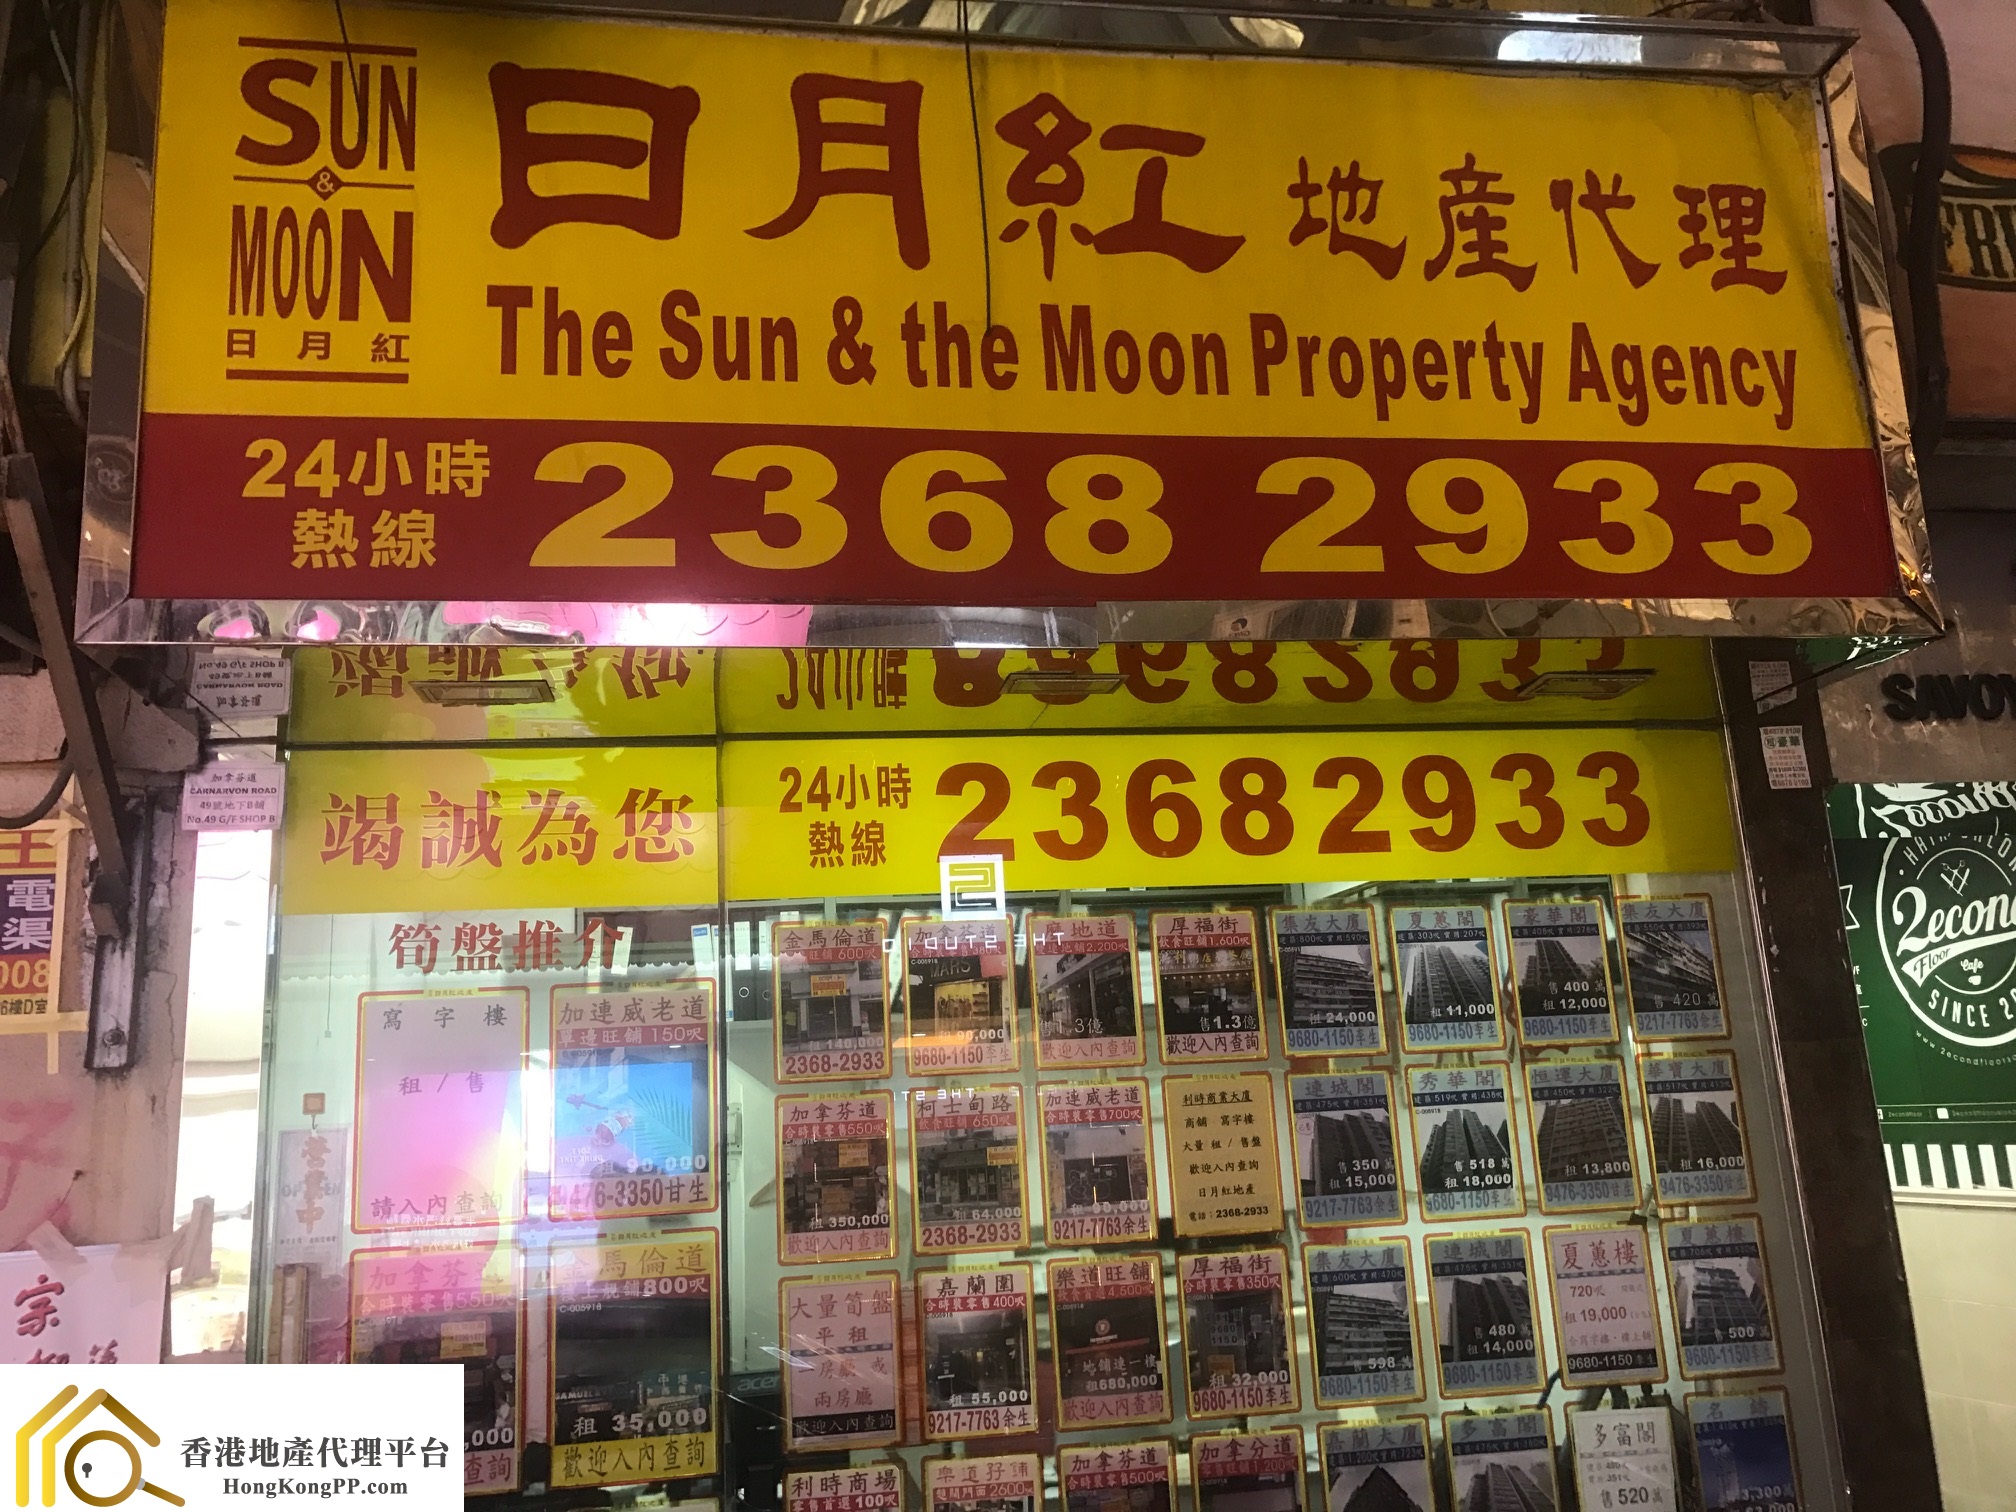 車位地產代理: 日月紅地產代理 The Sun & the Moon Property Agency